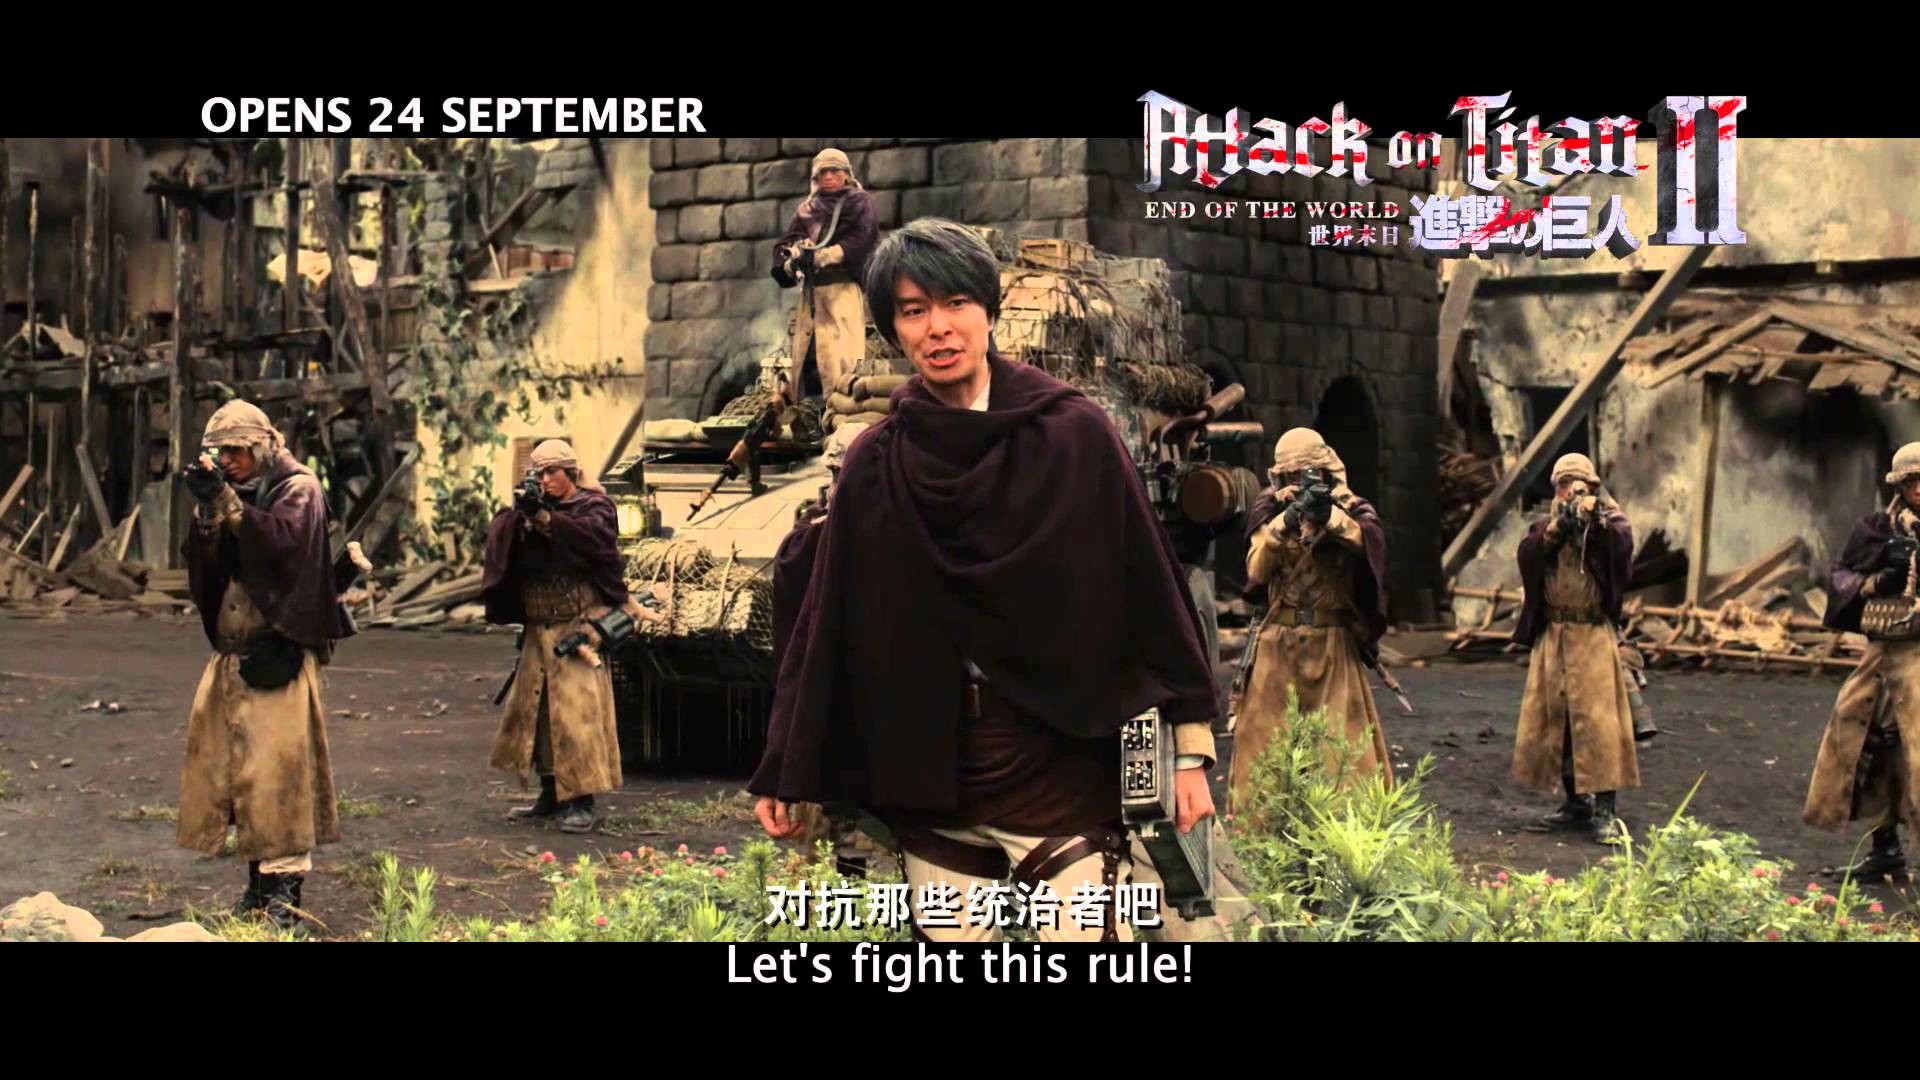 ATTACK ON TITAN 2: END OF THE WORLD è¿å»çå·¨äºº2ï¼ä¸çæ«æ¥ – In SG Cinemas 24  September – YouTube